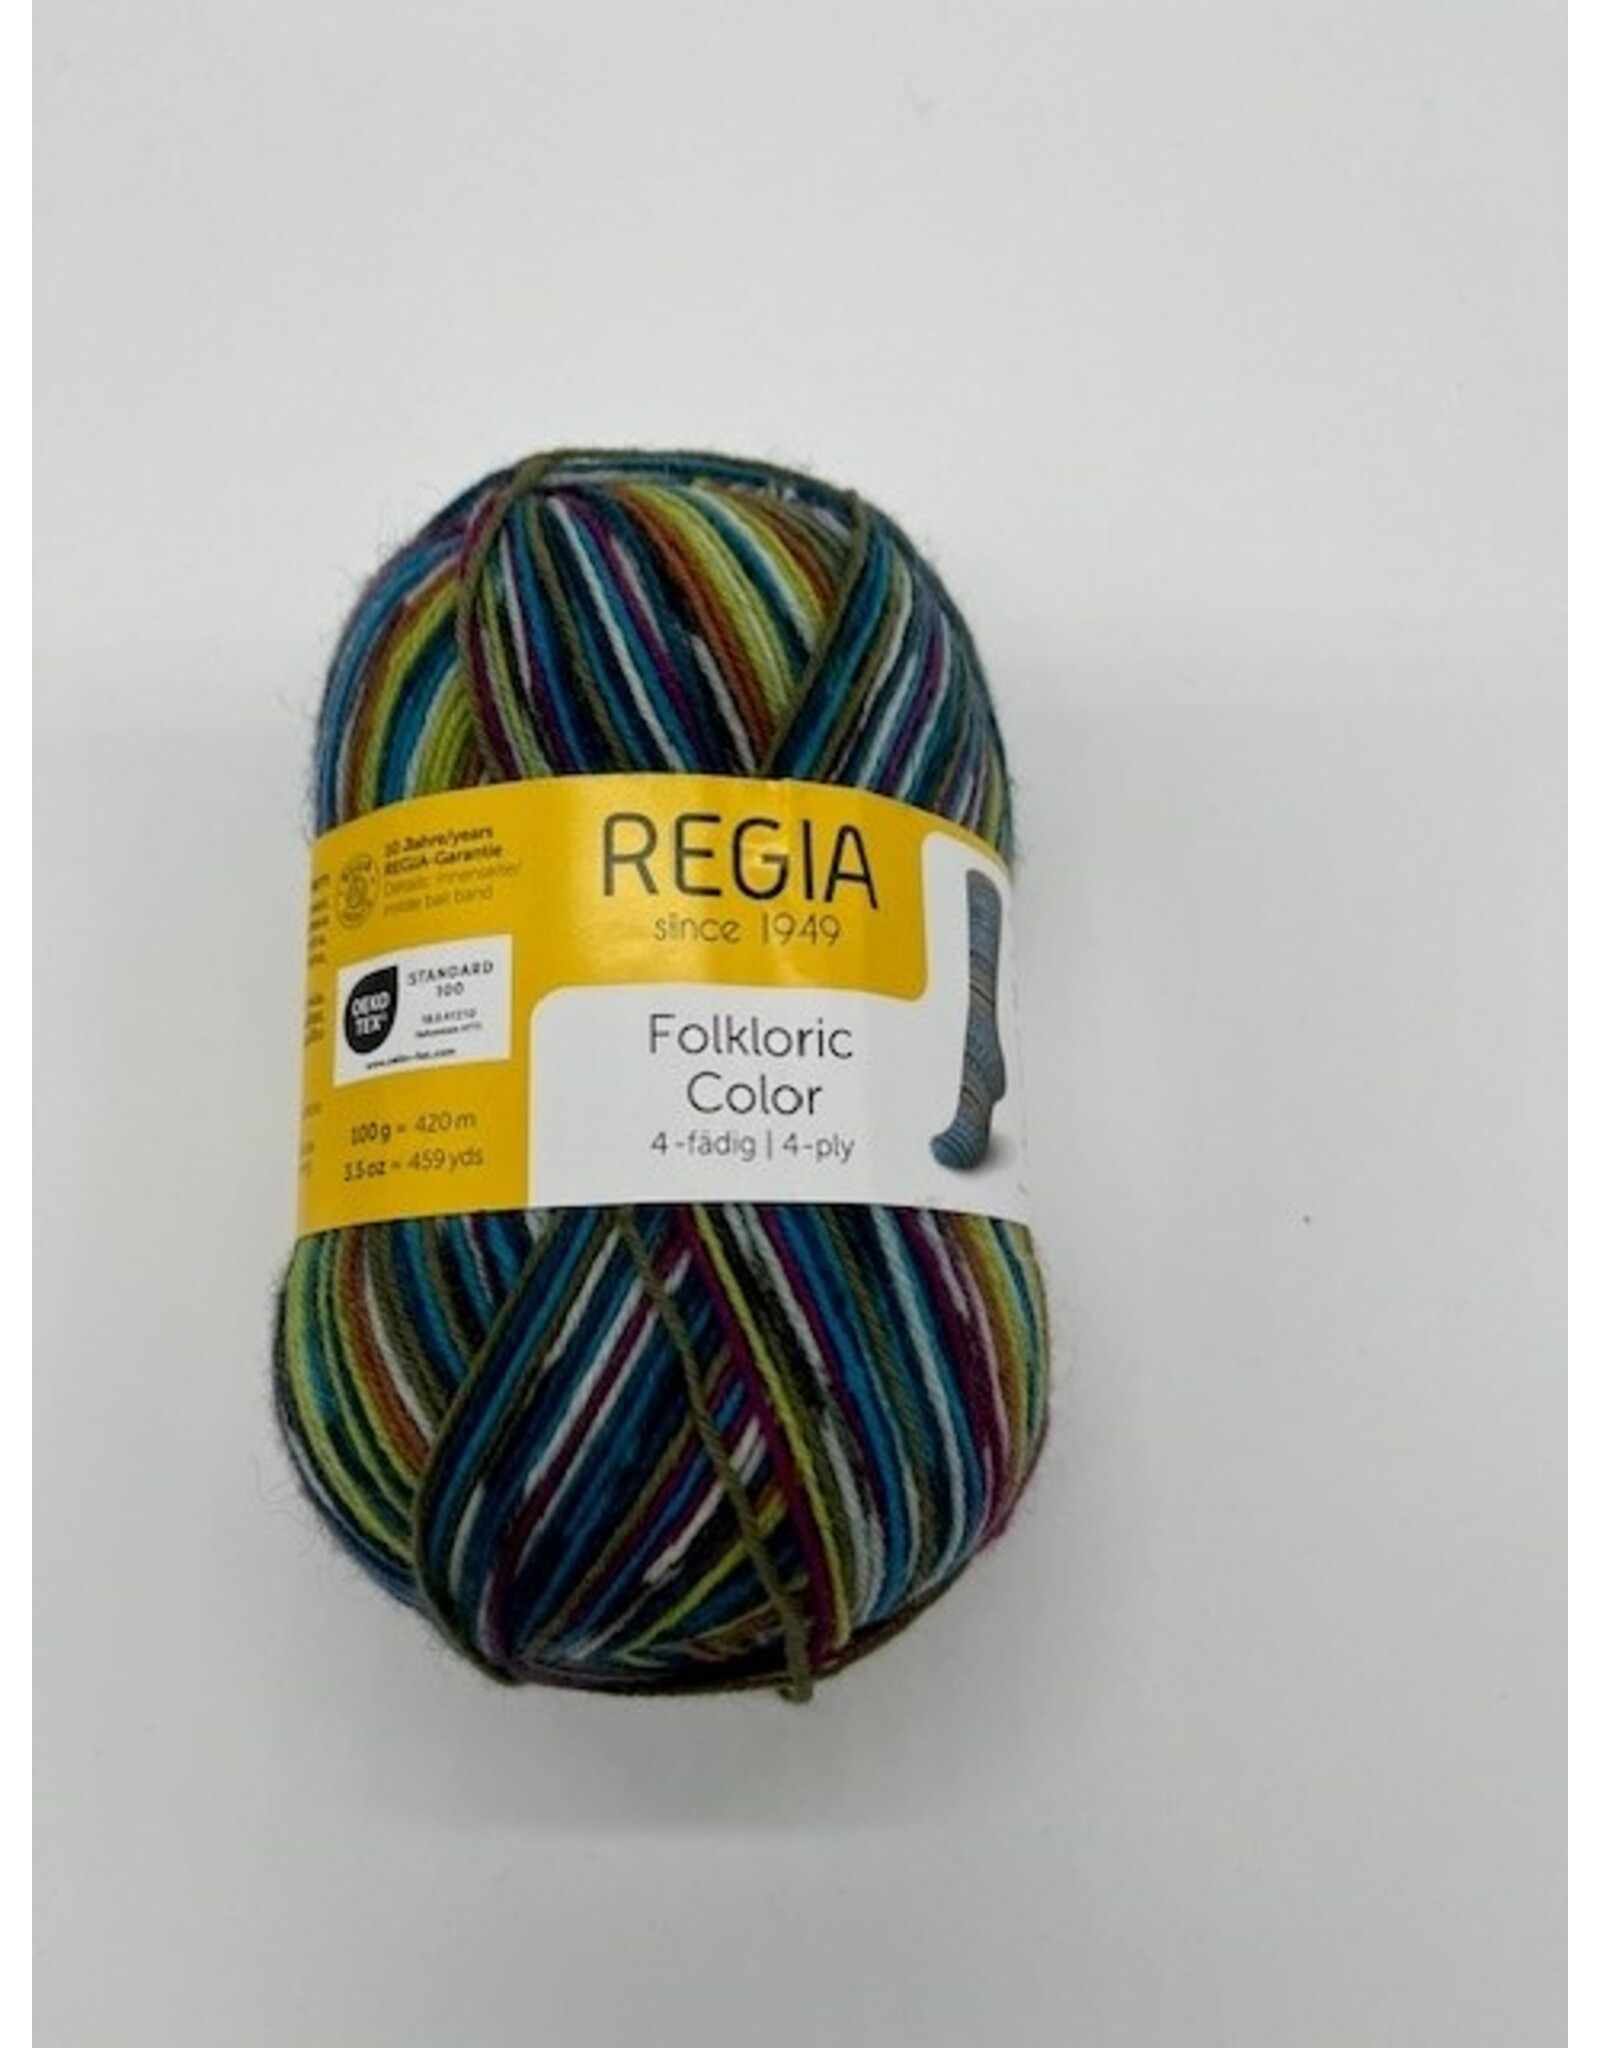 Regia Regia Folkloric Color 4-ply 3081